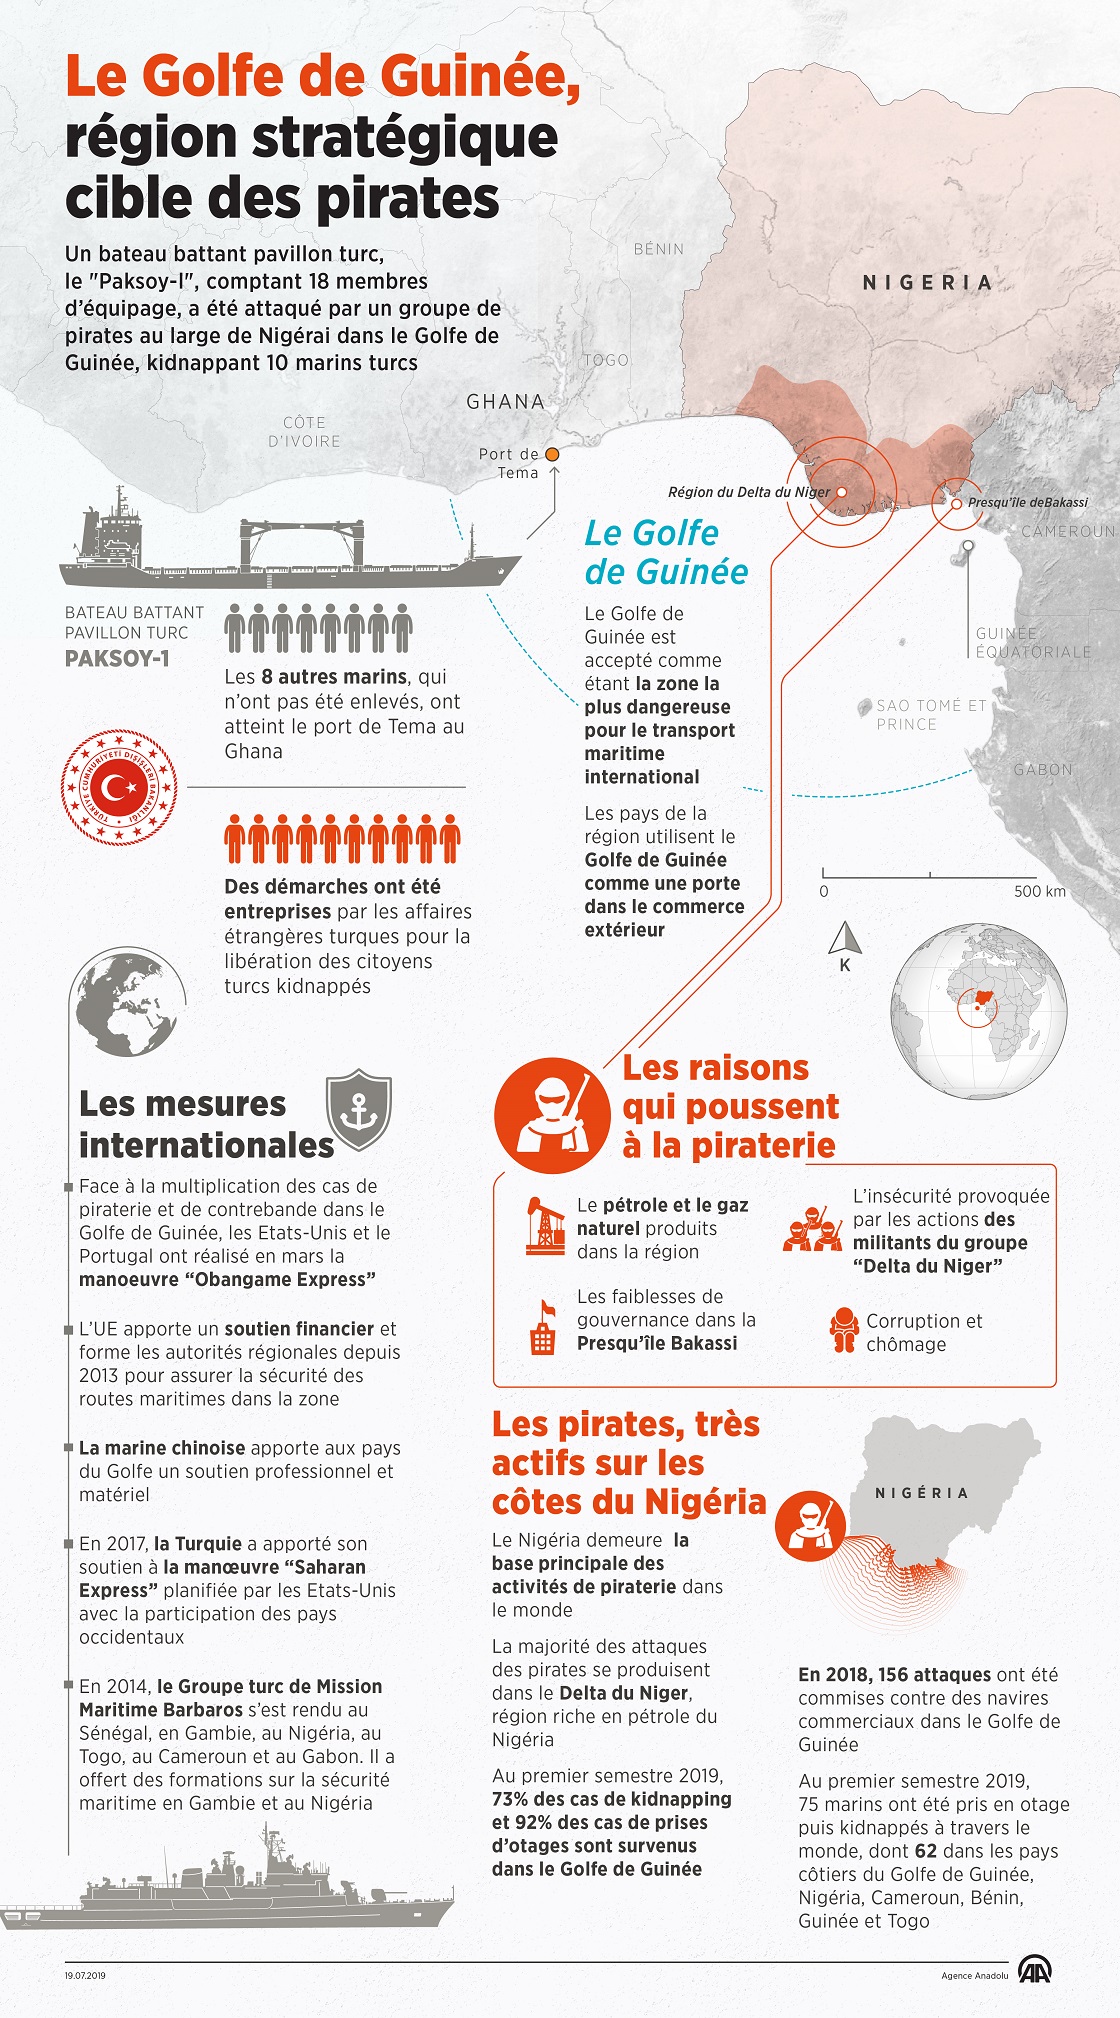 Le Golfe de Guinée, région stratégique cible des pirates 